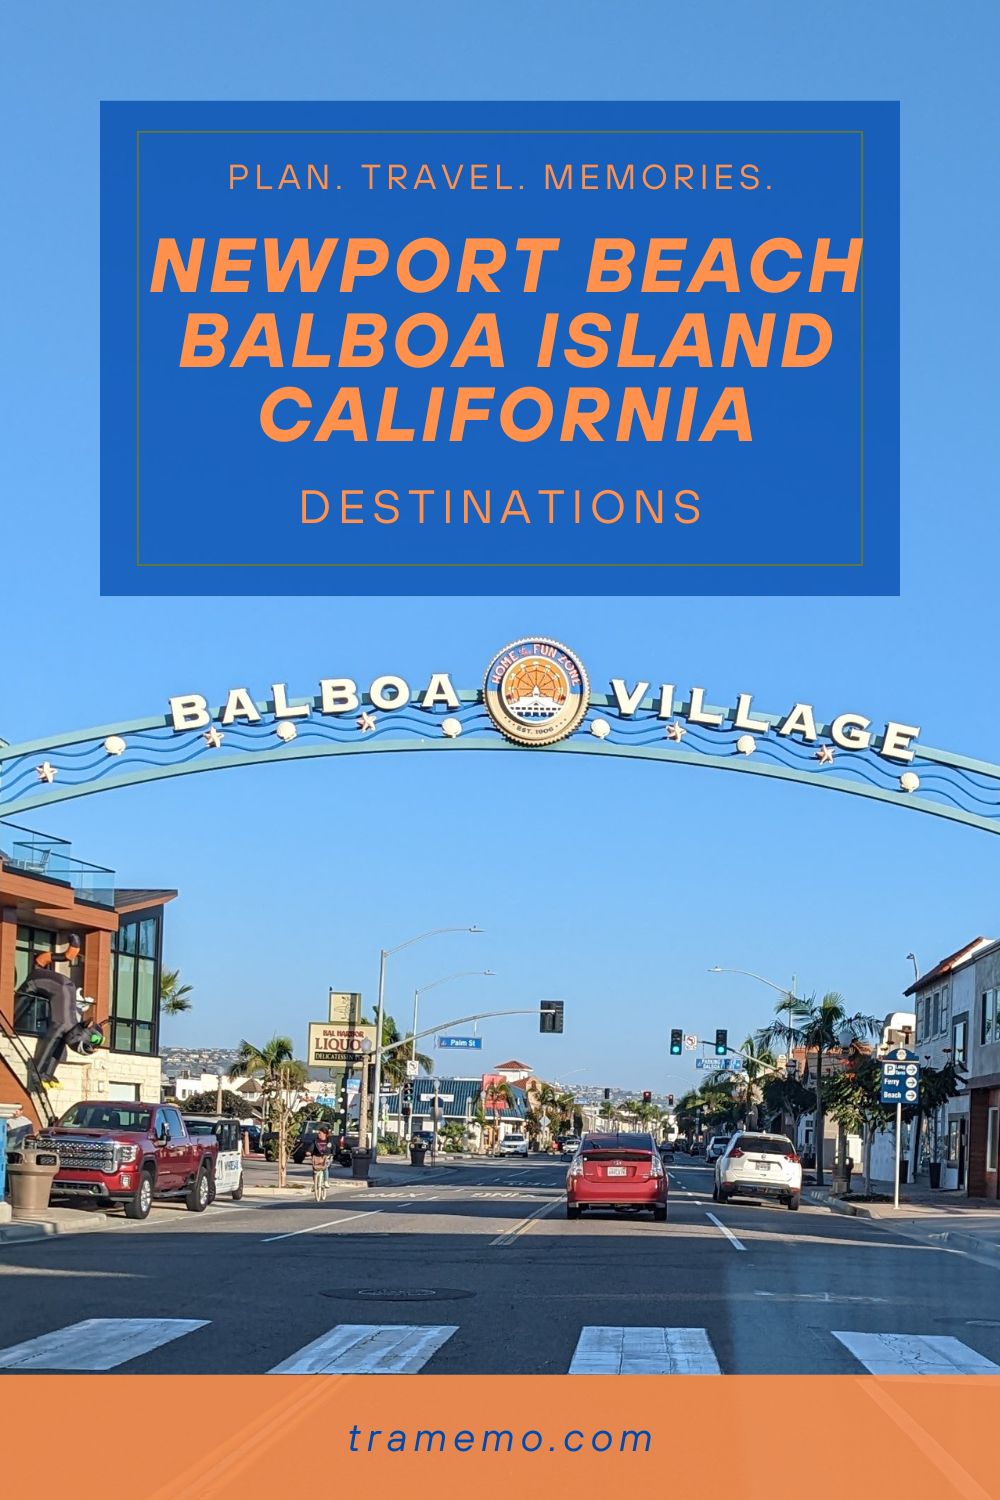 Newport Beach Balboa Island California